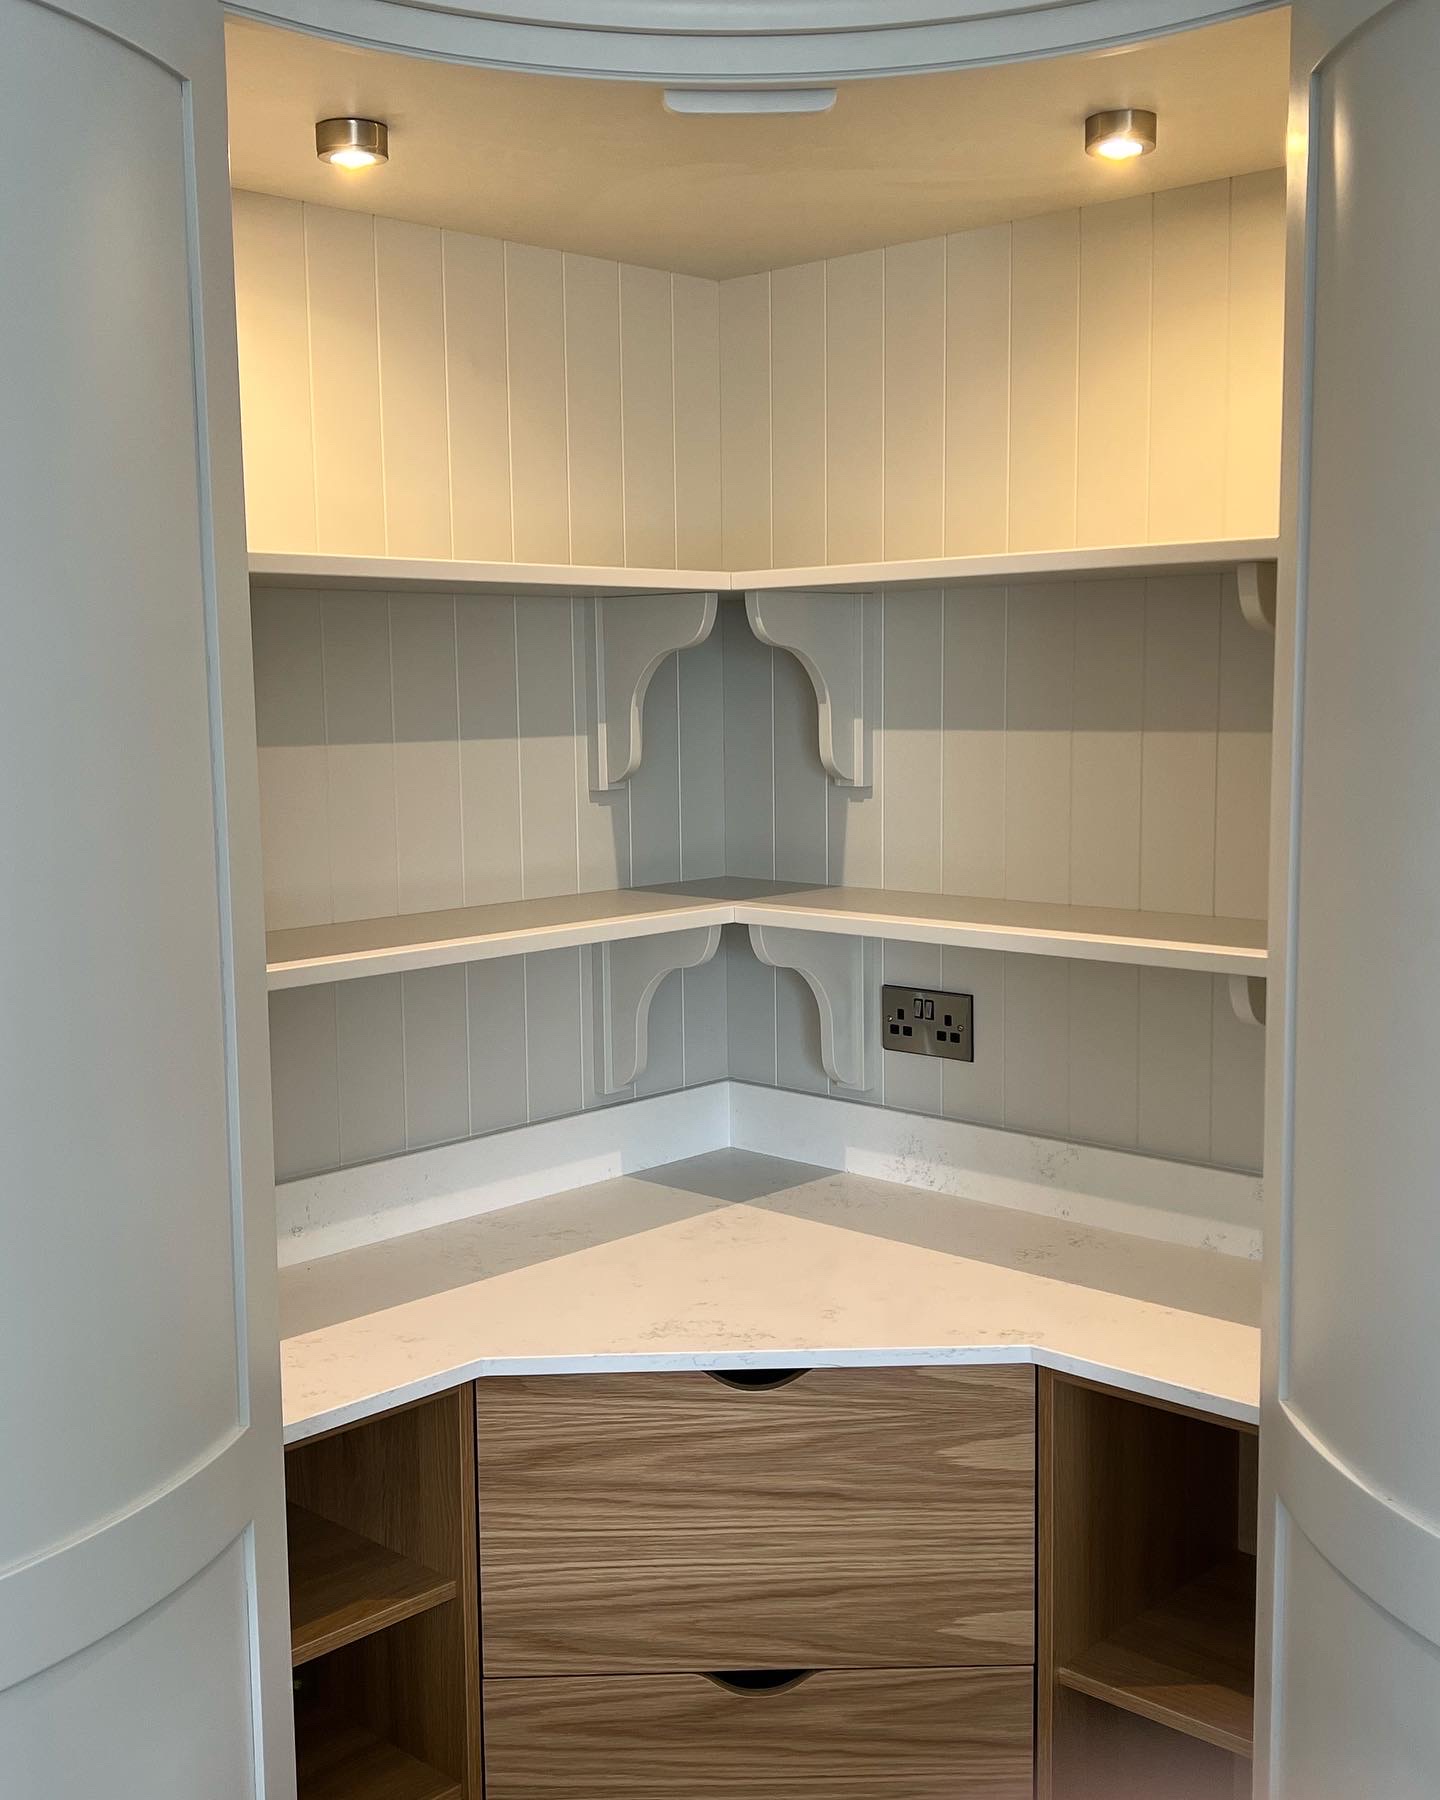 Bespoke Kitchen Cabinets installation and design in Crossgar